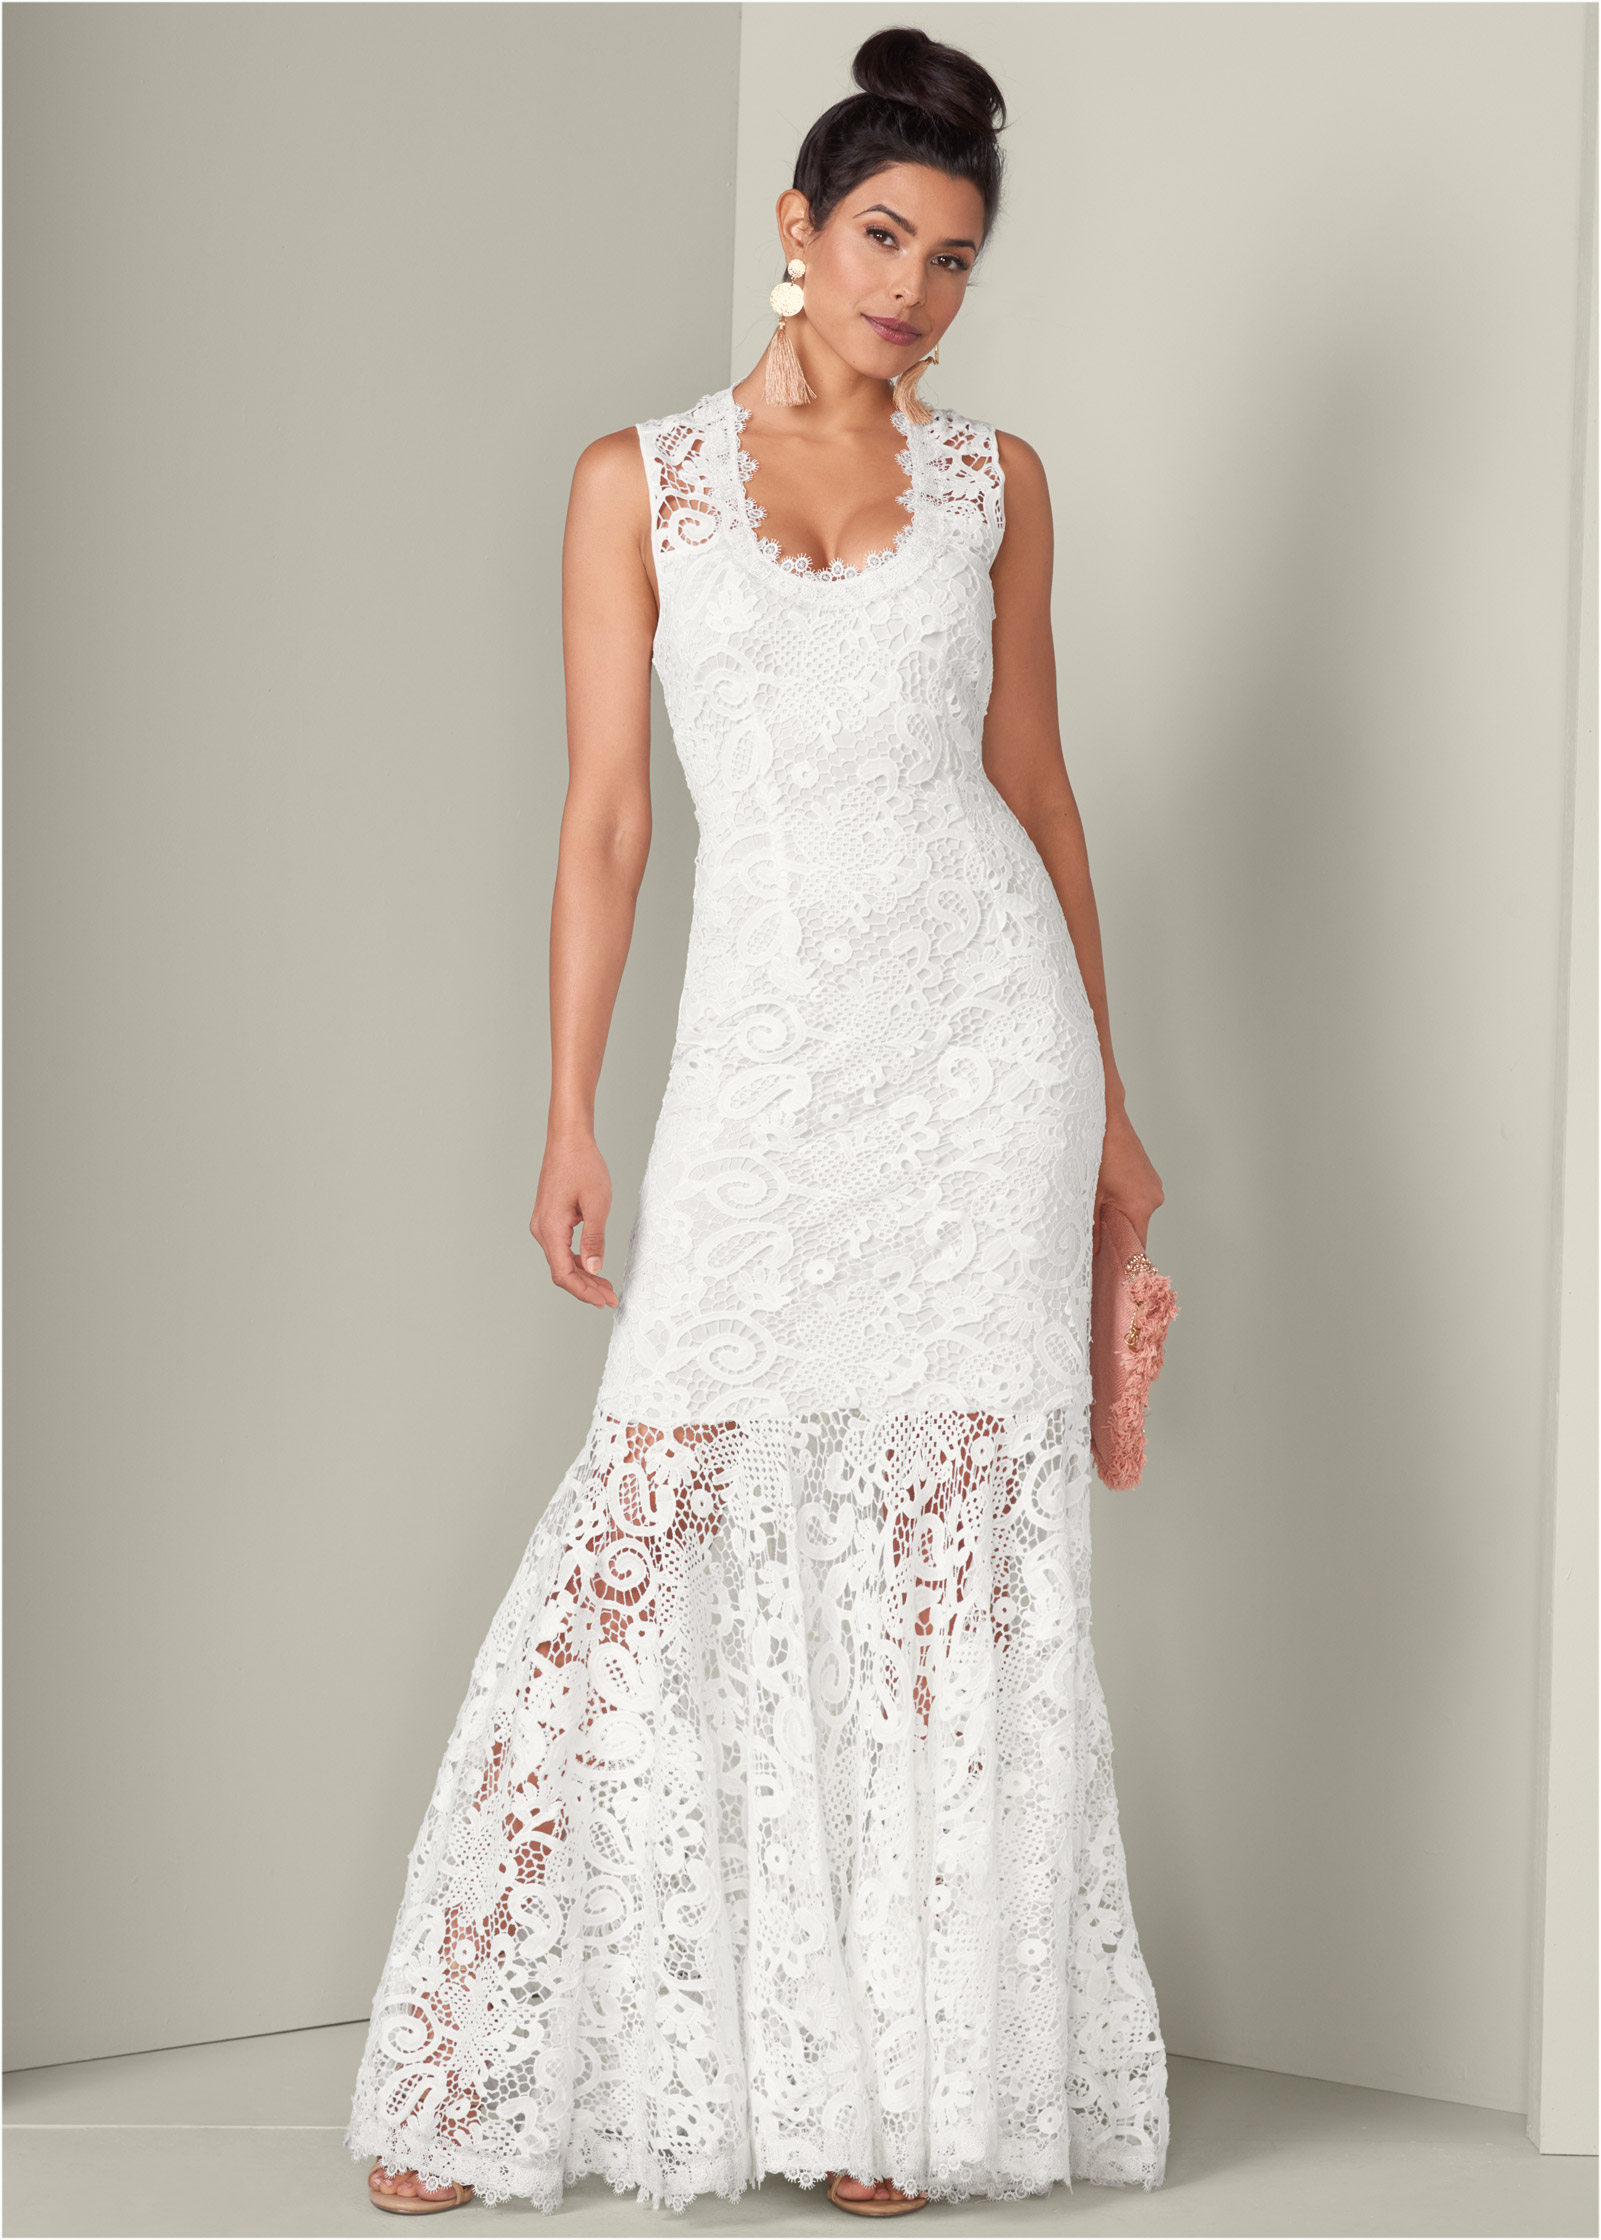 venus white dresses